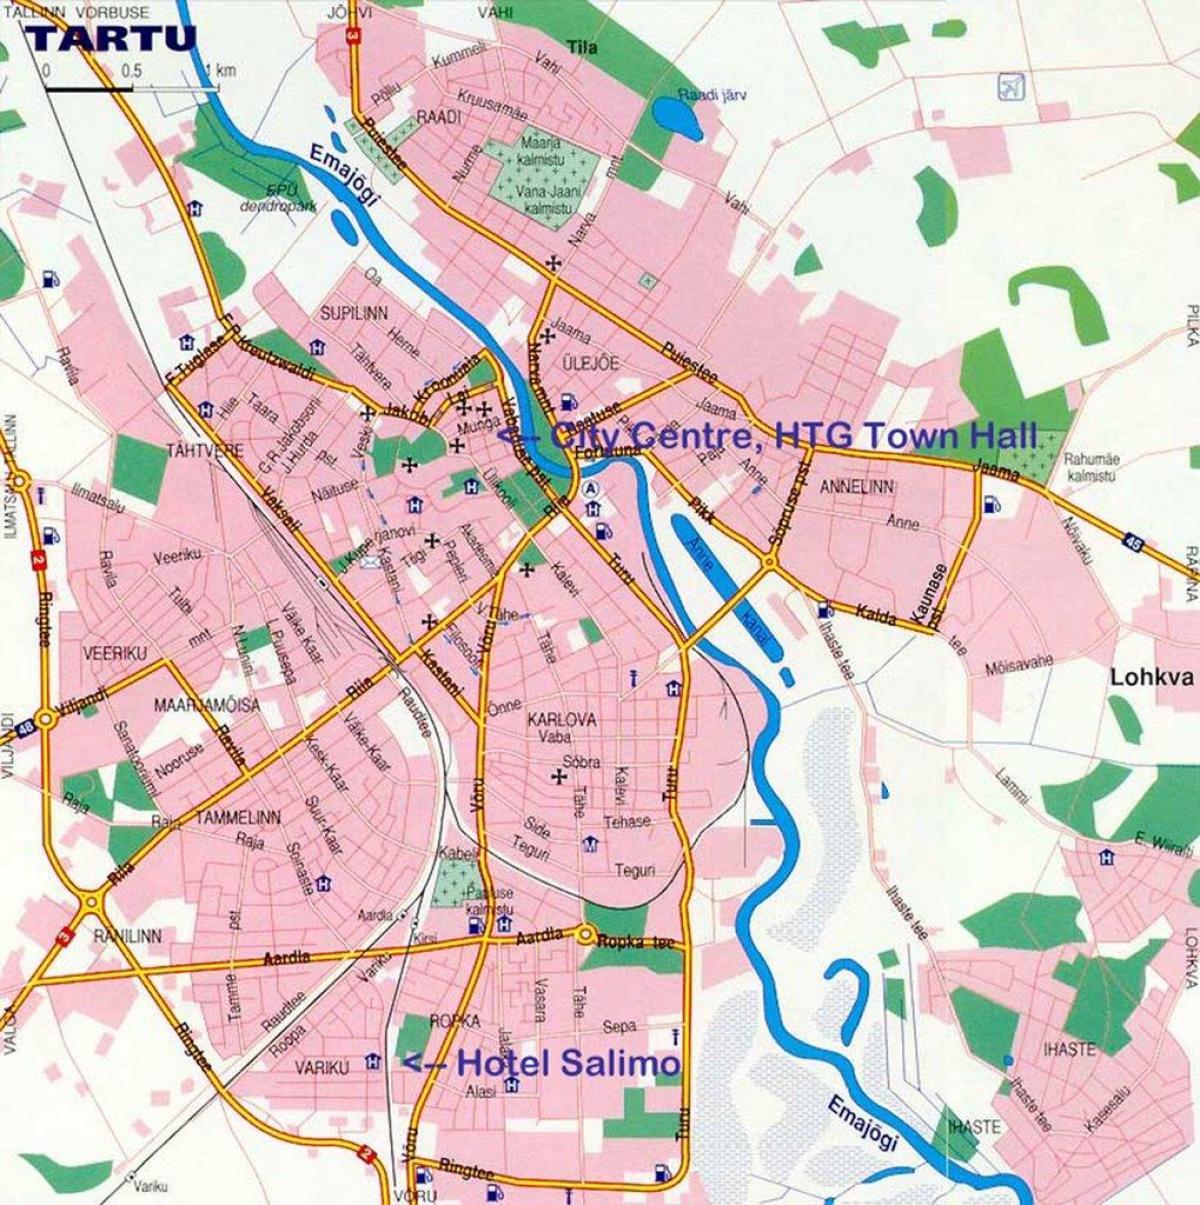 Karte von tartu, Estland